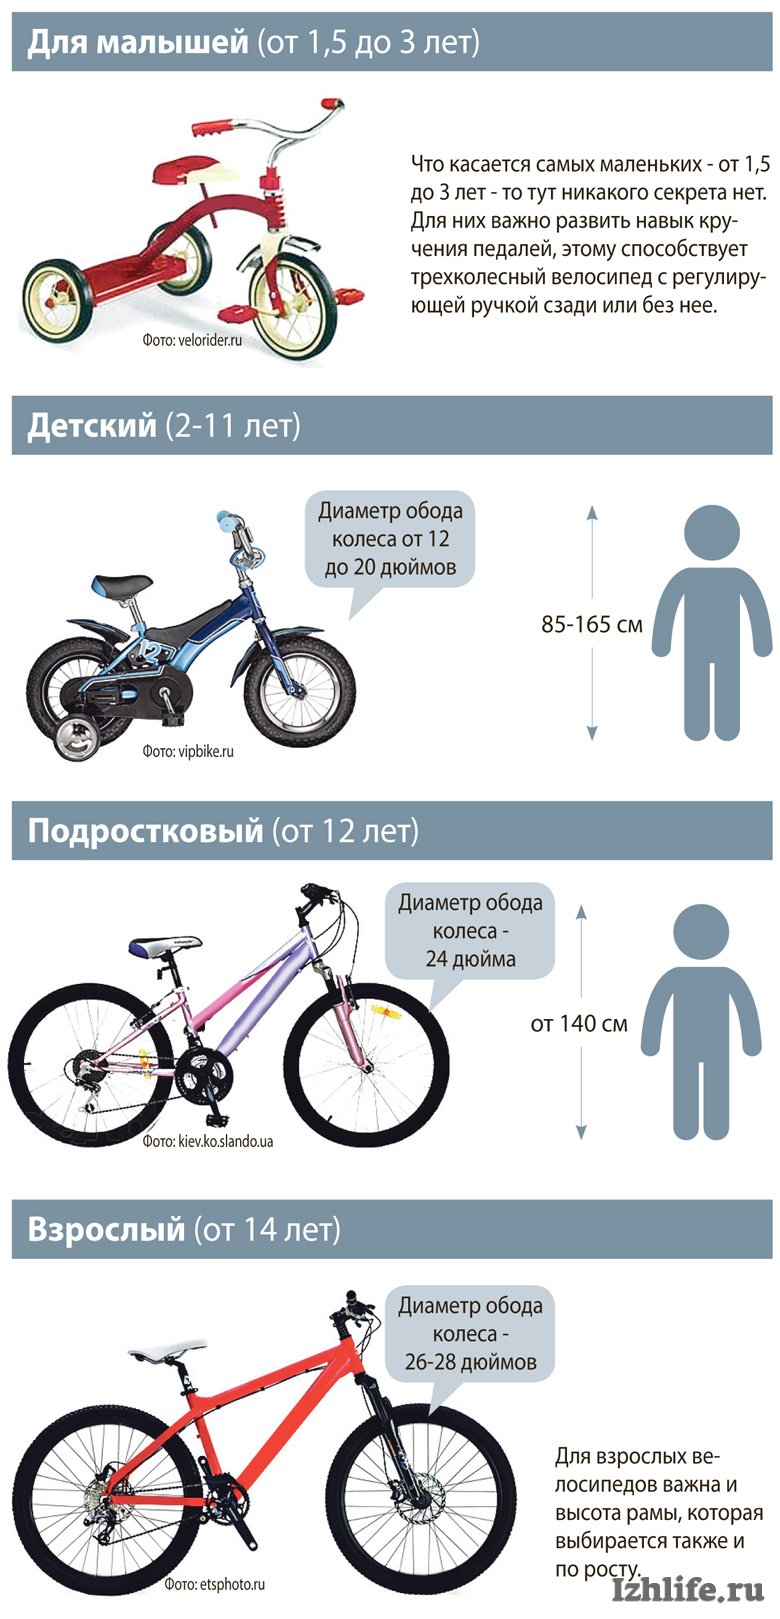 Какая рама велосипеда нужна. Размер колес детского велосипеда по росту. Как выбрать велосипед для ребенка 4 года по росту и весу таблица. Таблица подбора велосипеда по росту ребенка рамы. Как выбрать раму для велосипеда по росту таблица.